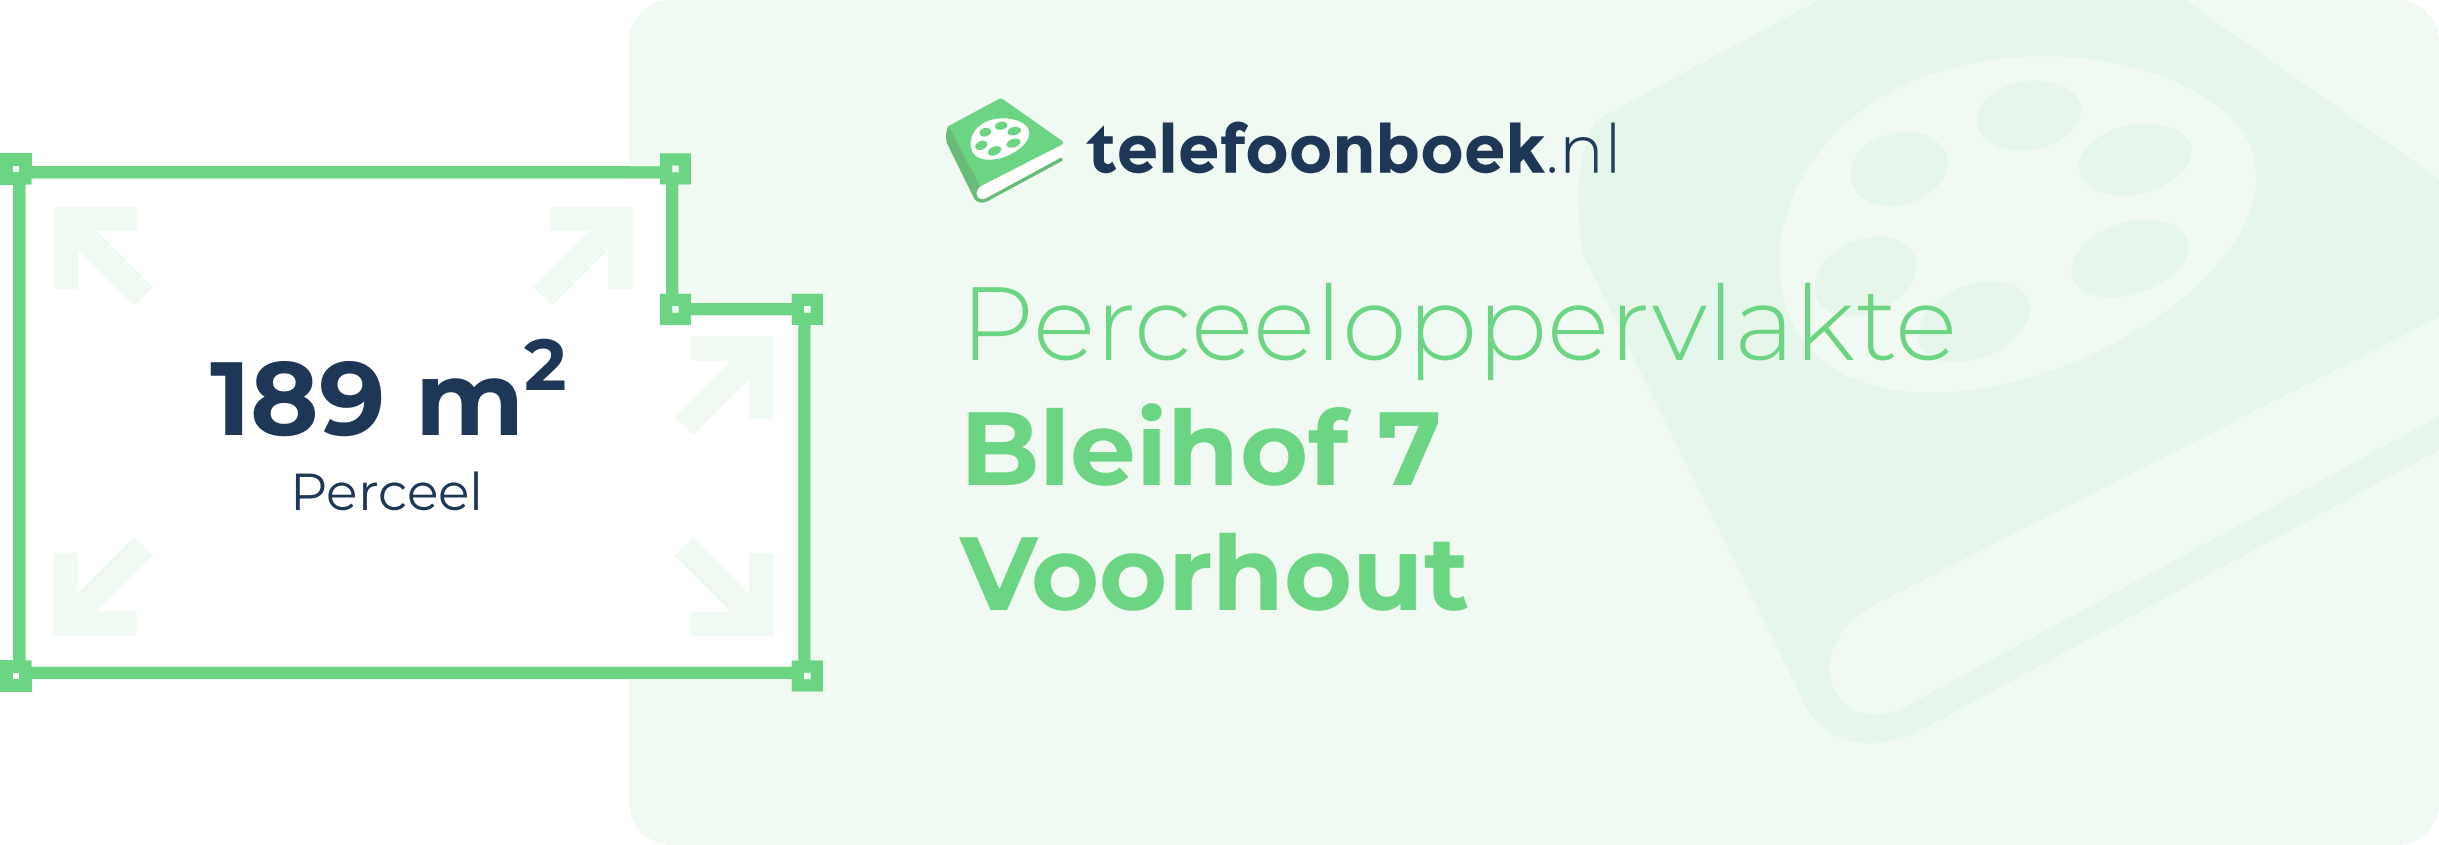 Perceeloppervlakte Bleihof 7 Voorhout